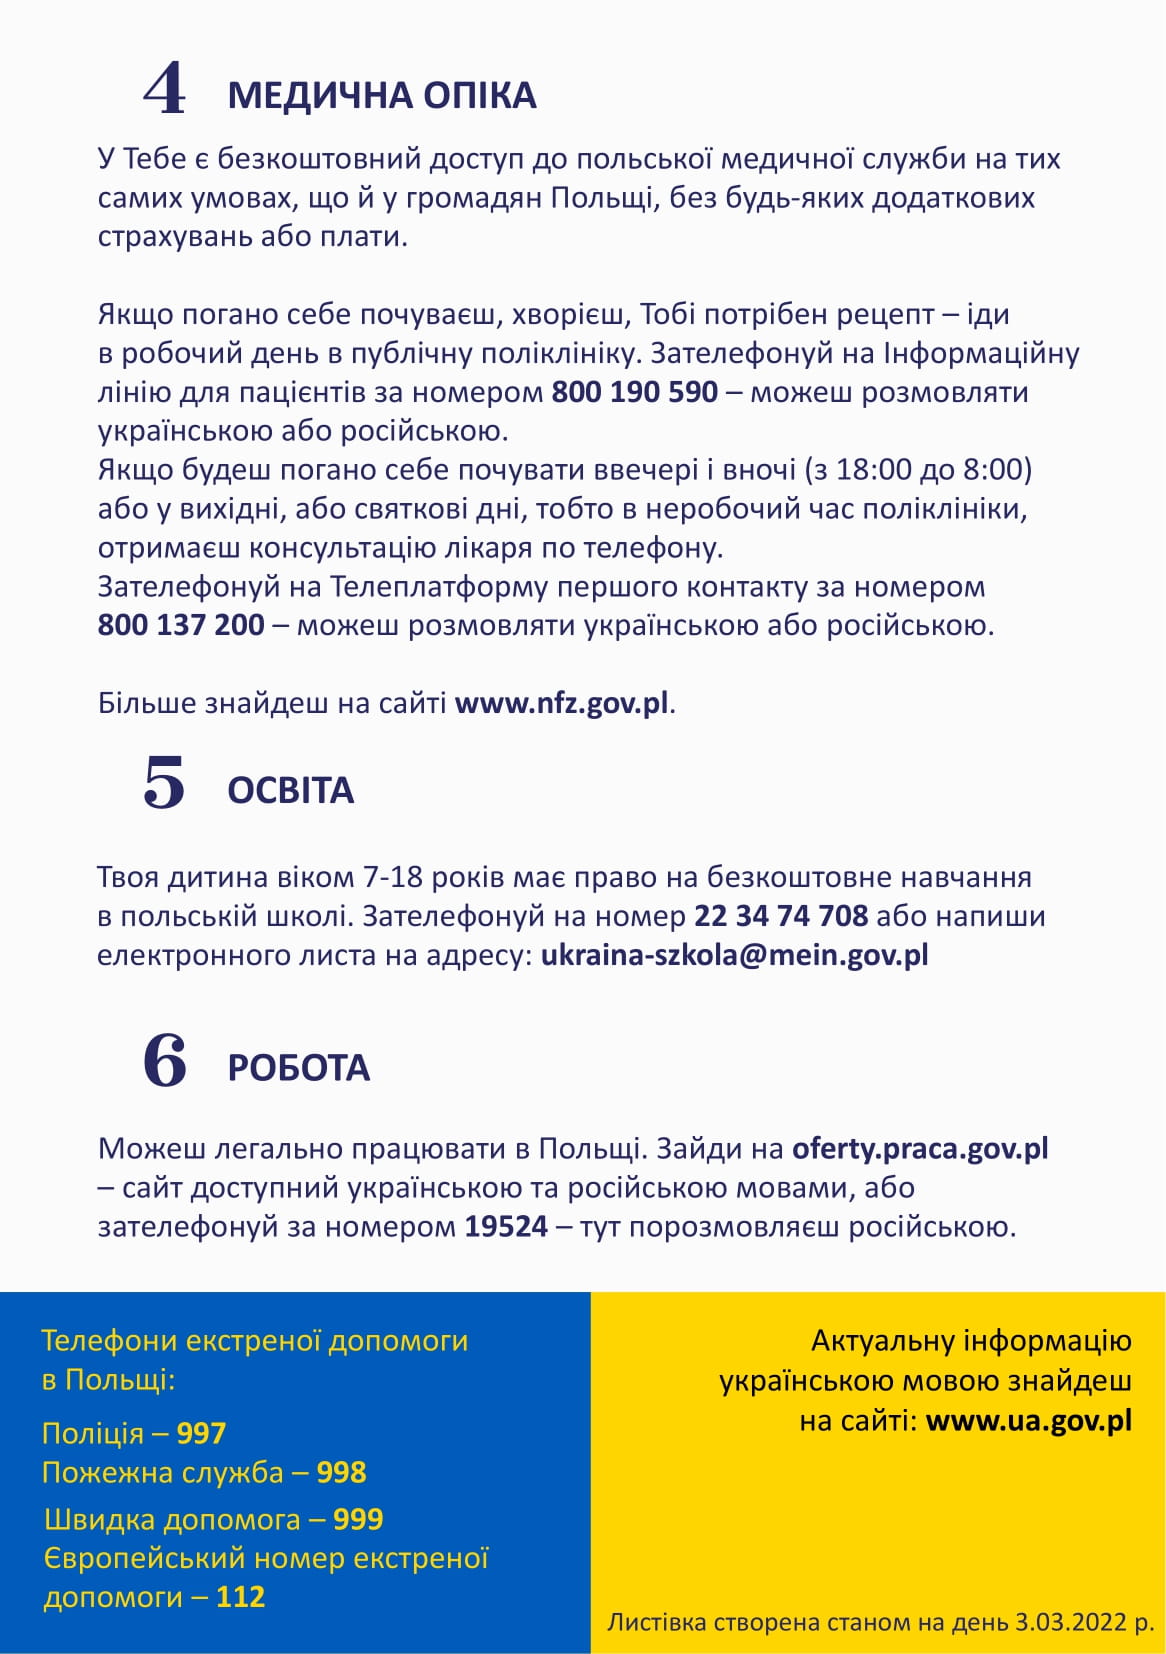 Kilka przydatnych informacji dla osób przyjeżdżających z Ukrainy po ukraińsku